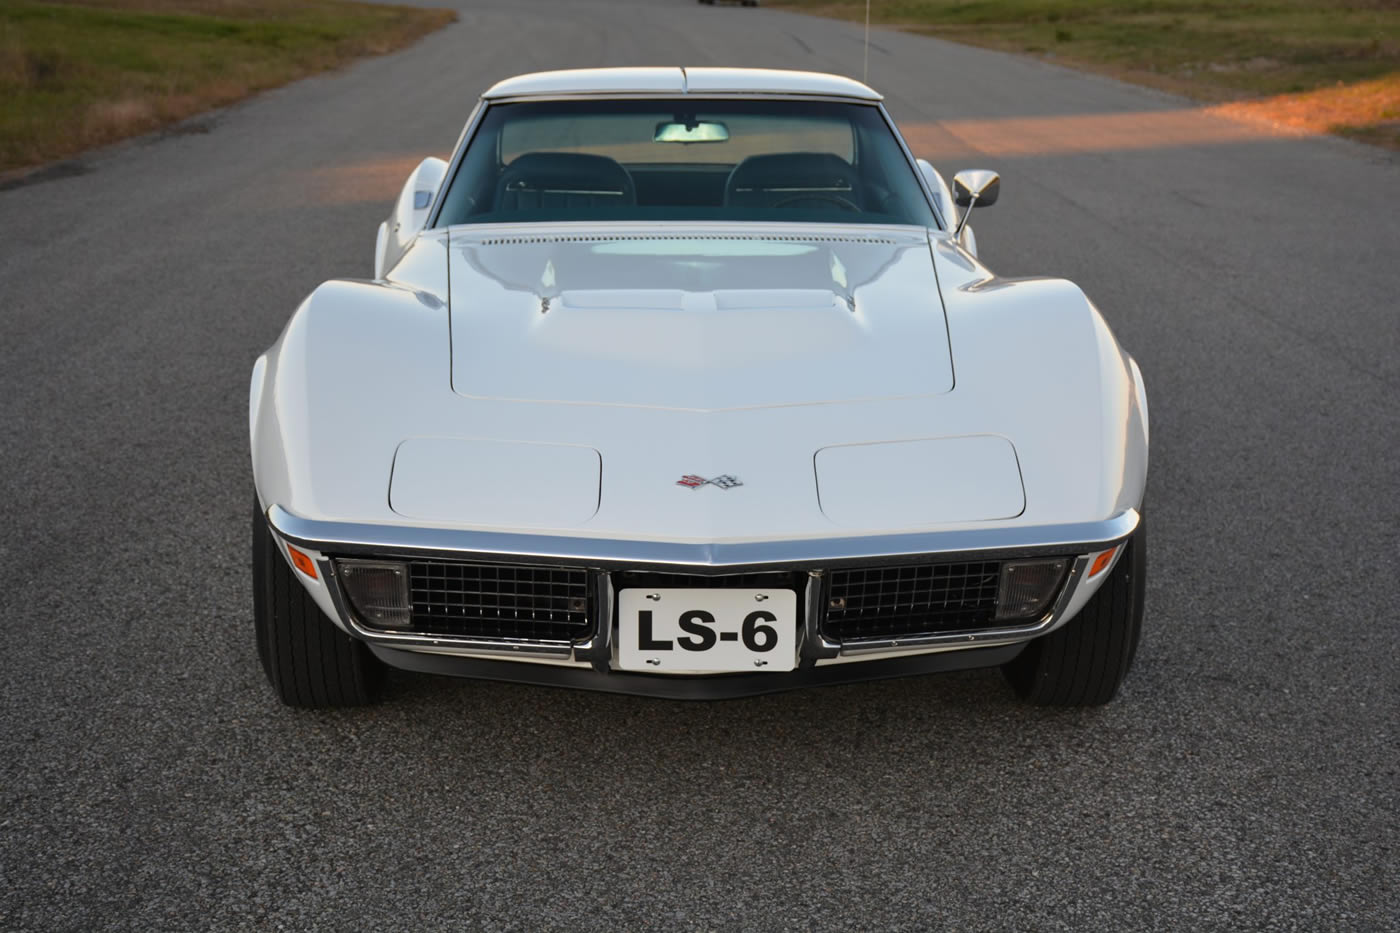 1971 Corvette LS6 Coupe in Classic White